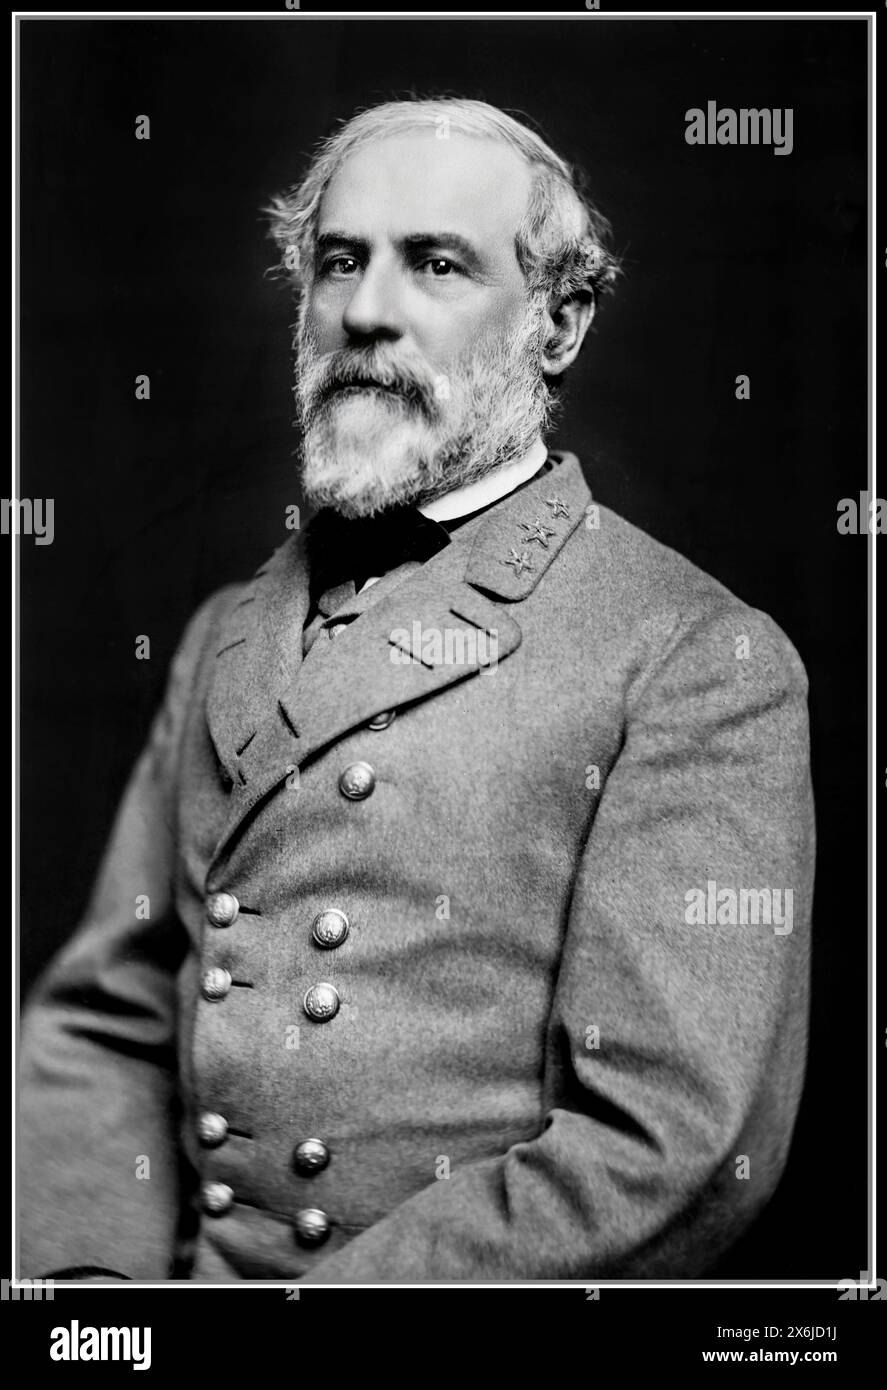 Général Robert E. Lee, officier de l'armée confédérée 1864 États-Unis--histoire--guerre de Sécession, 1861-1865 Lee, Robert E Portrait Photographs. Négatifs collodion humide. Robert Edward Lee (19 janvier 1807 – 12 octobre 1870) est un général confédéré pendant la guerre de Sécession, vers la fin de laquelle il est nommé commandant général de l'armée des États confédérés. Il dirige l'armée de Virginie du Nord - l'armée la plus puissante de la Confédération - de 1862 jusqu'à sa reddition en 1865, gagnant une réputation de tacticien habile. Banque D'Images